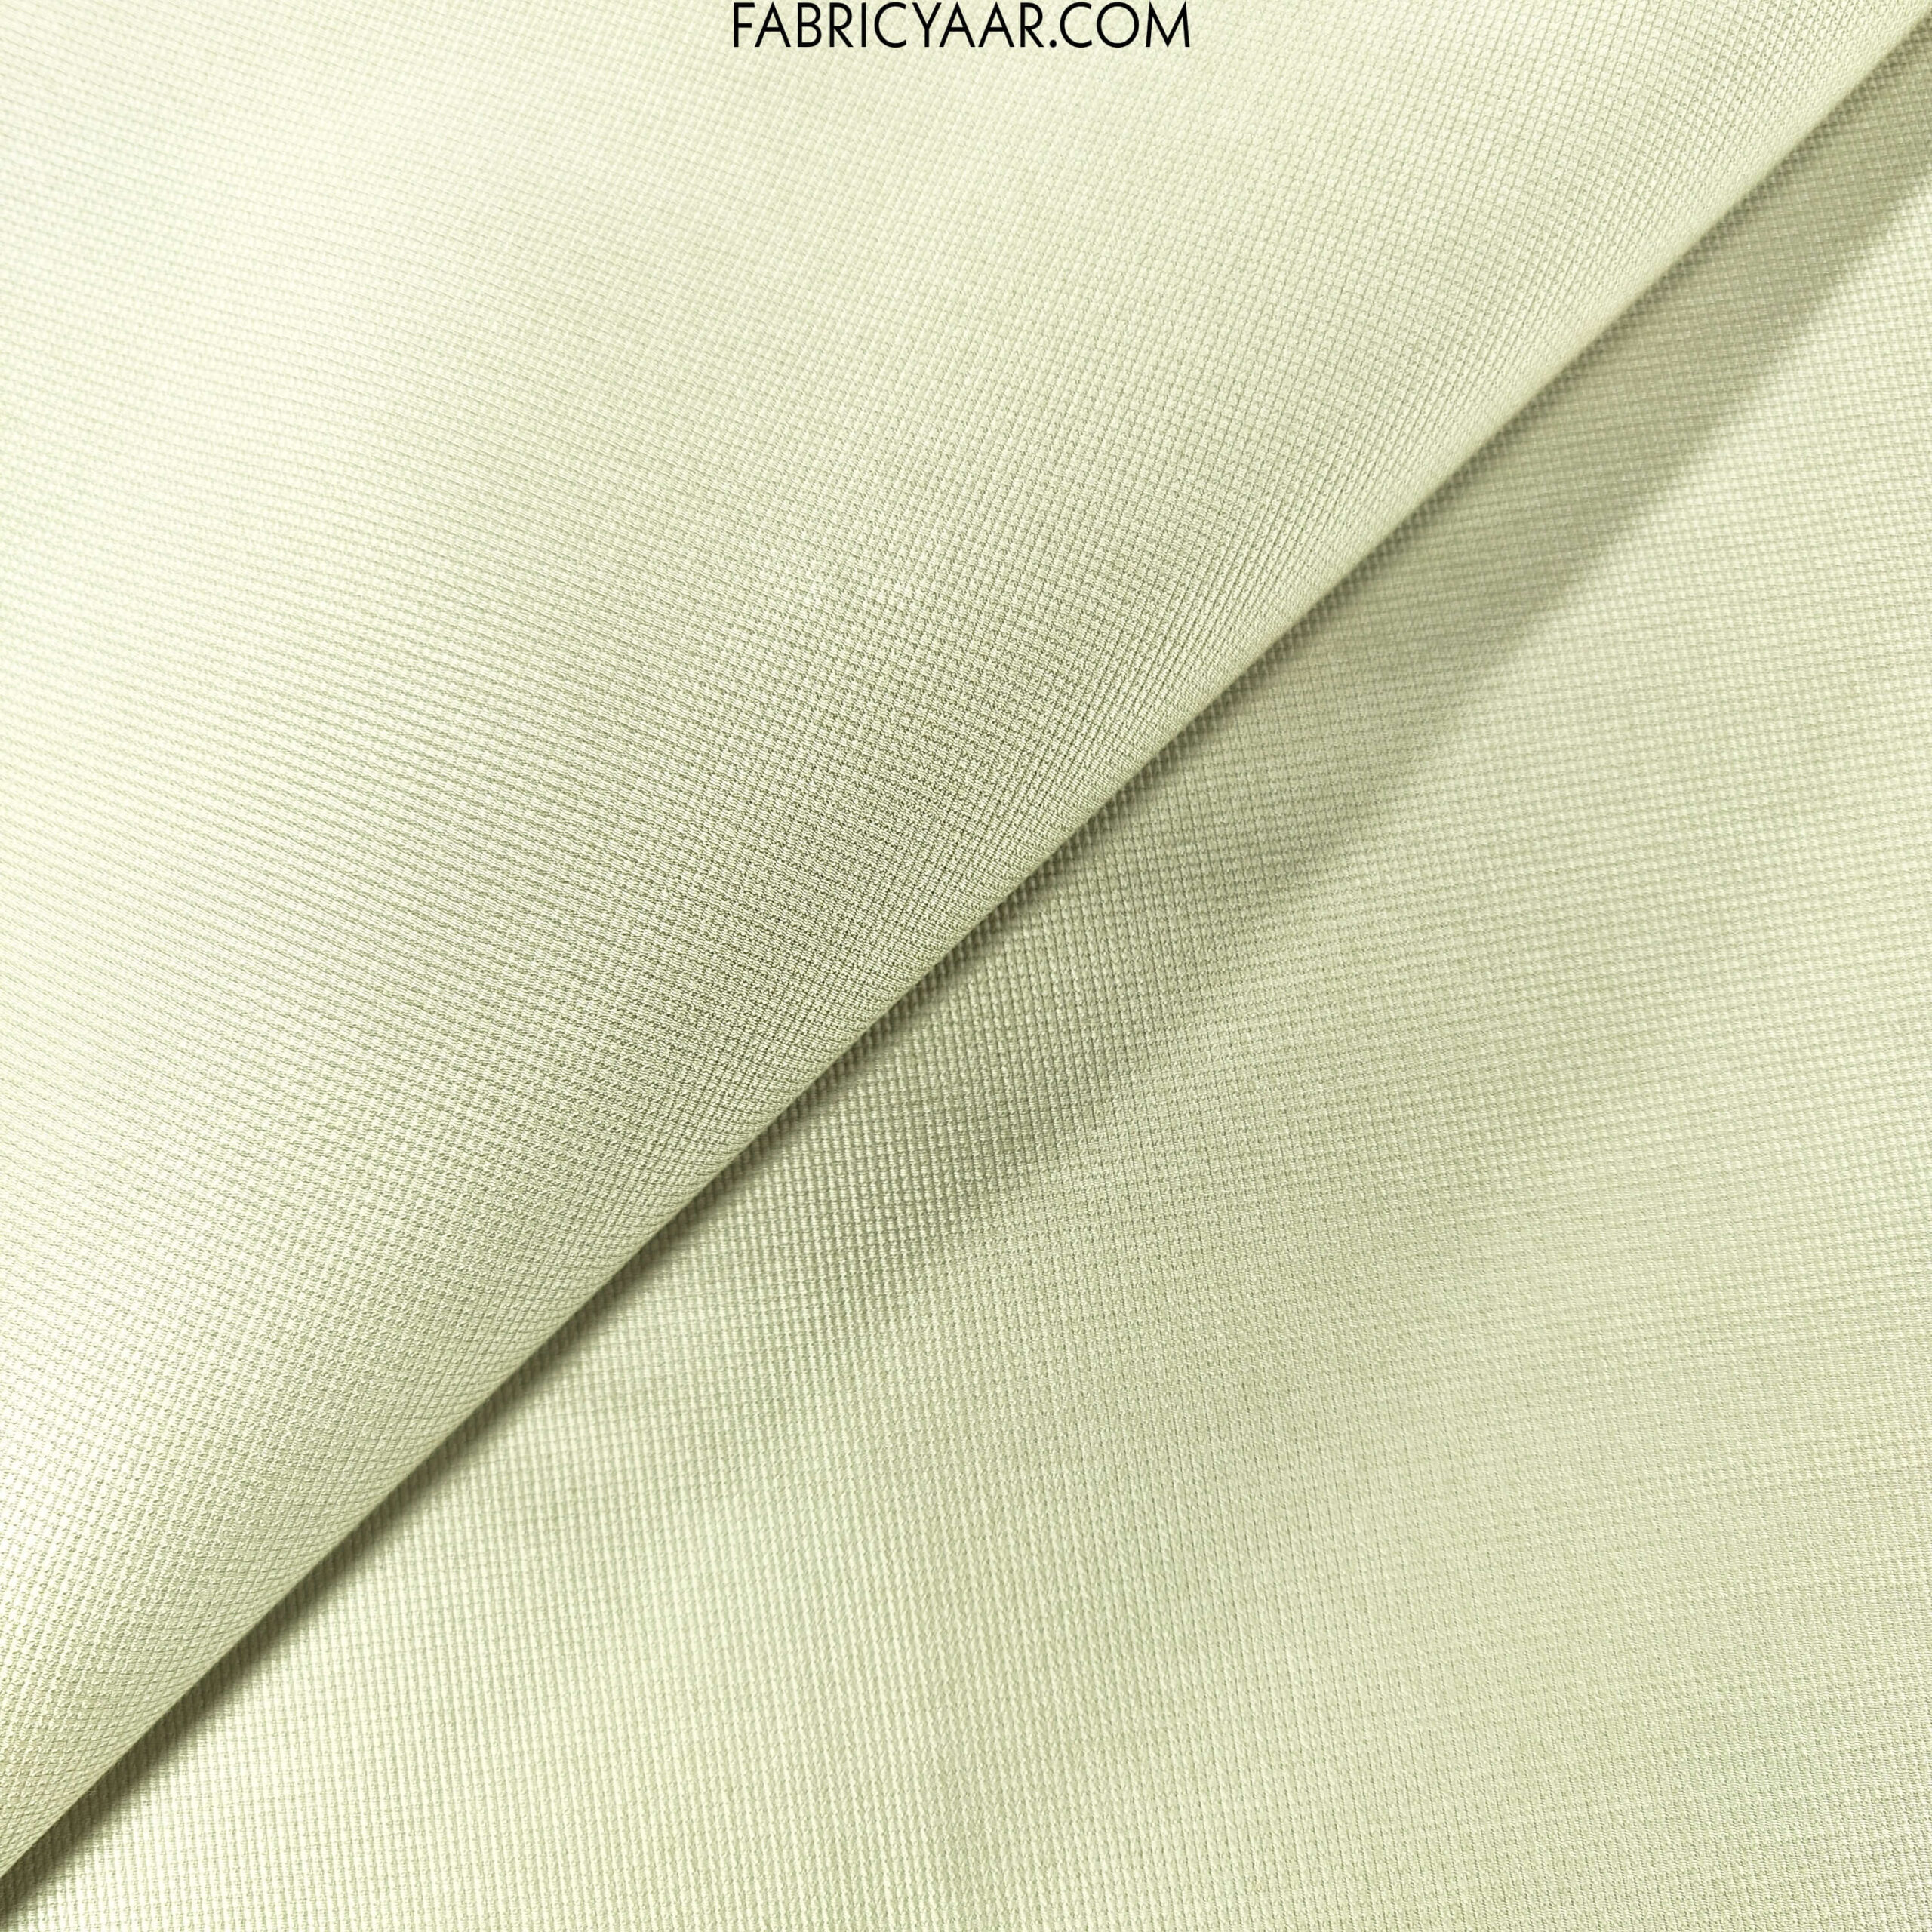 Cotton Mens Stretchable Trouser Fabric PlainSolids Multicolour